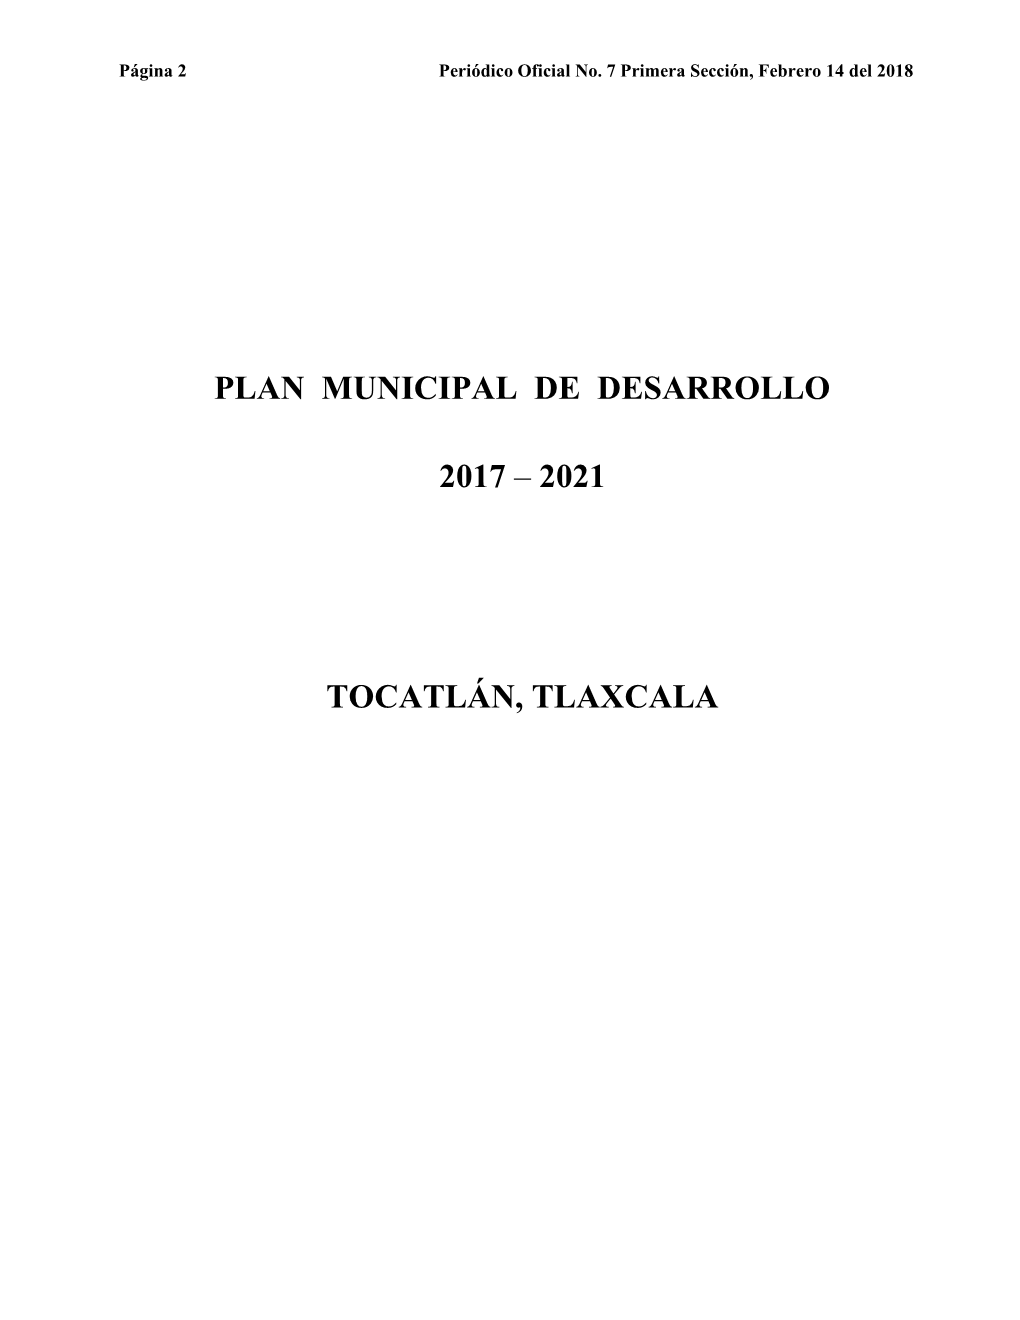 Plan Municipal De Desarrollo 2017 – 2021 Tocatlán, Tlaxcala